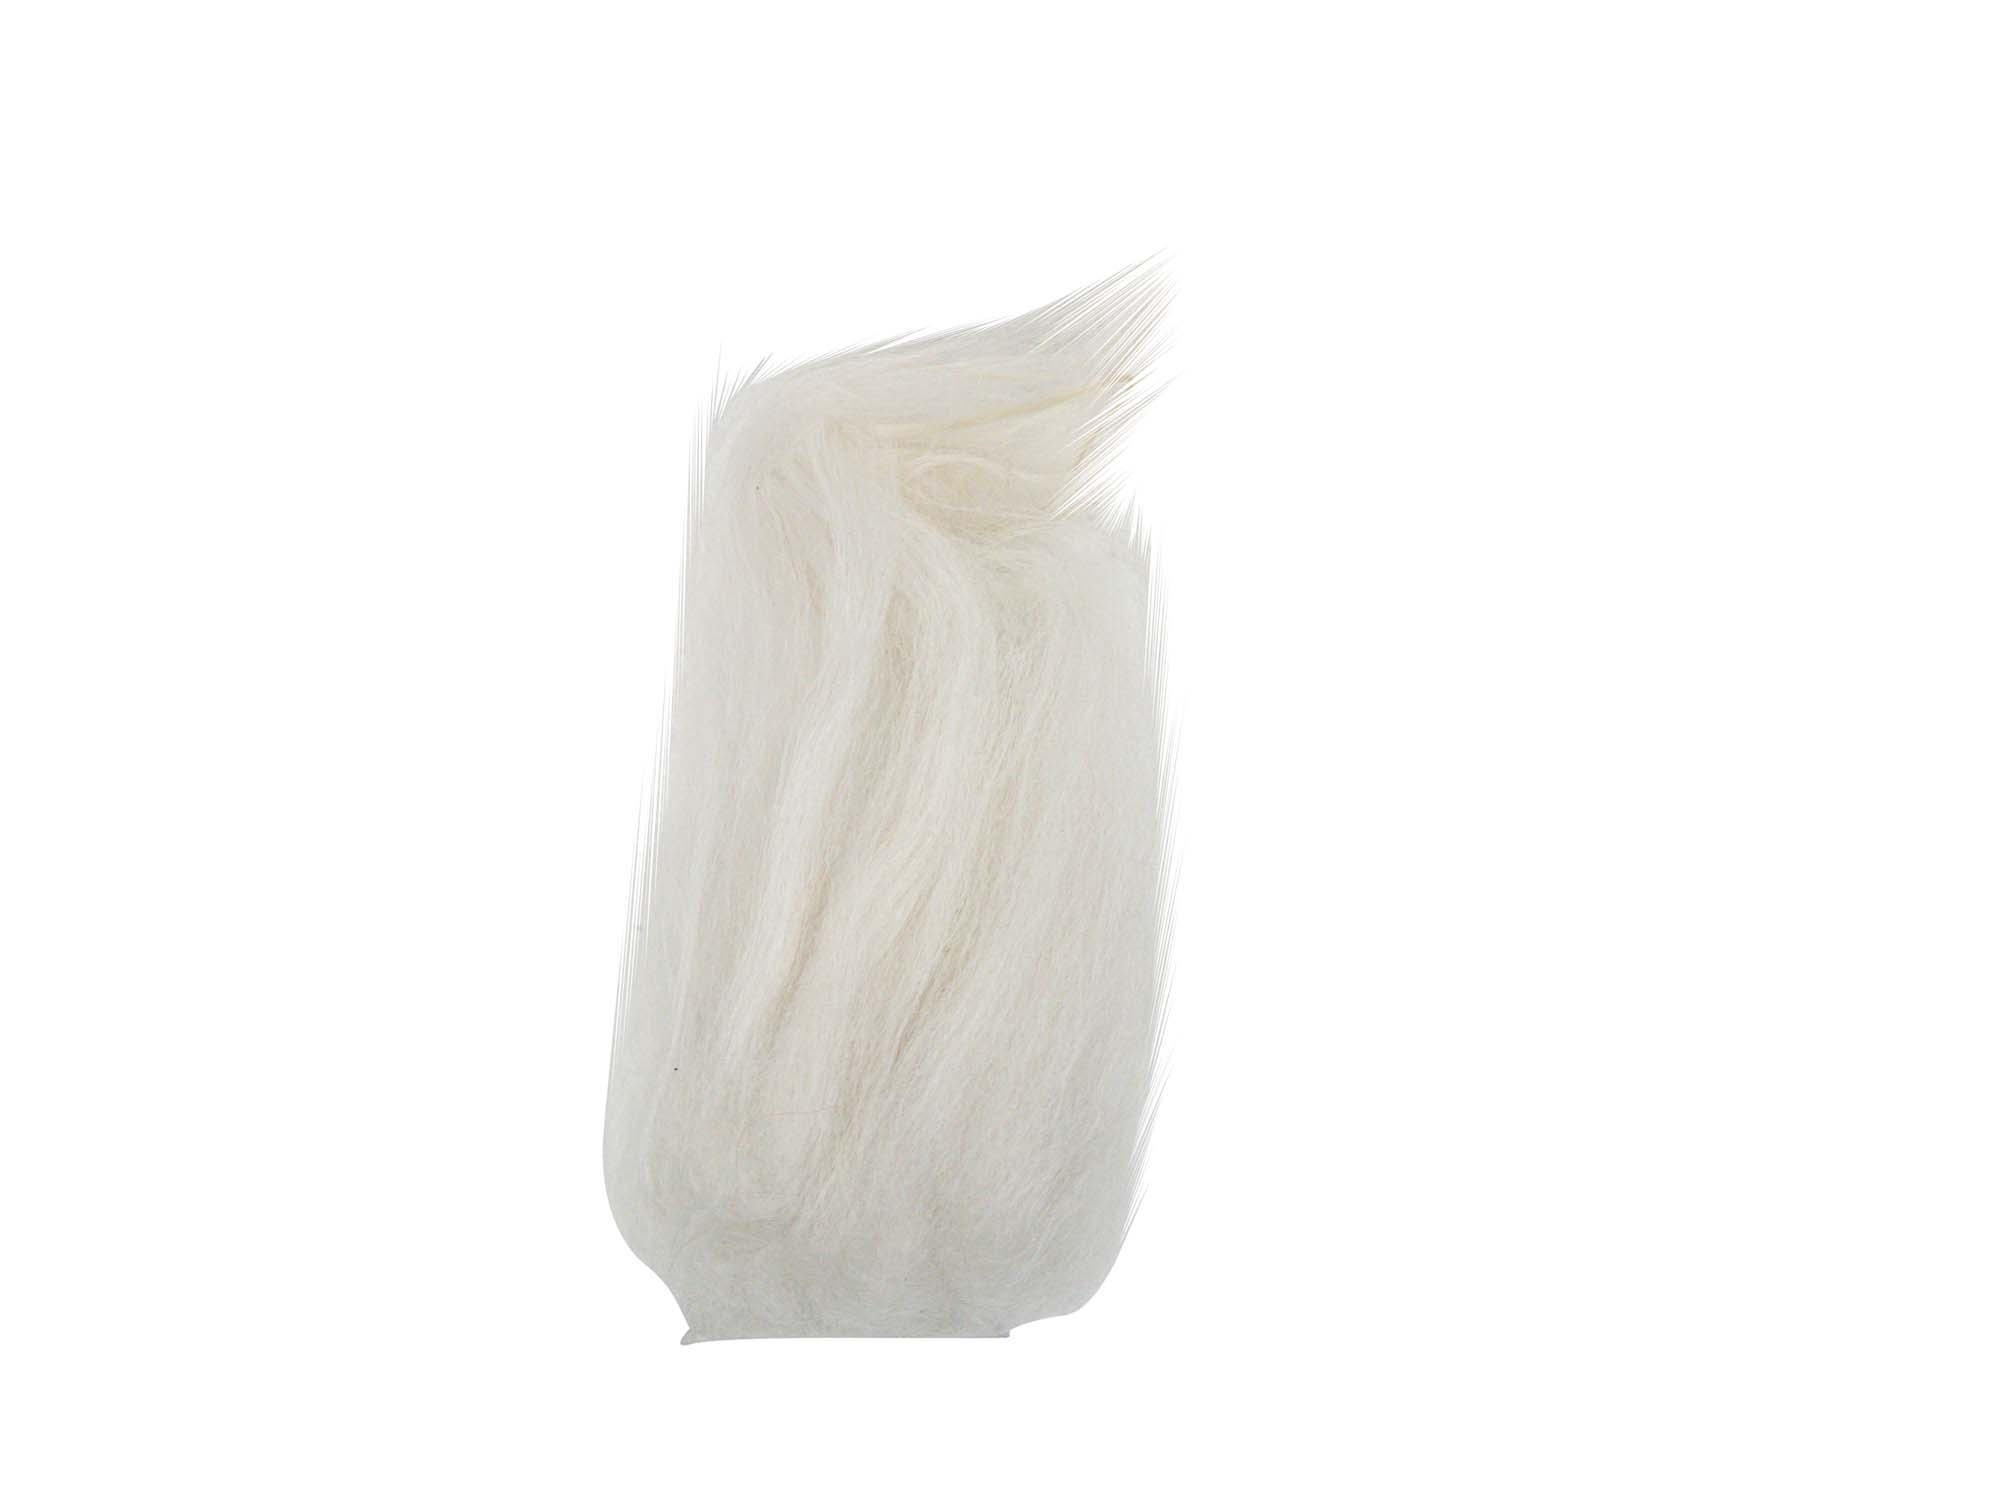 Dyed Icelandic Sheepskin Craft Fur Piece: White 